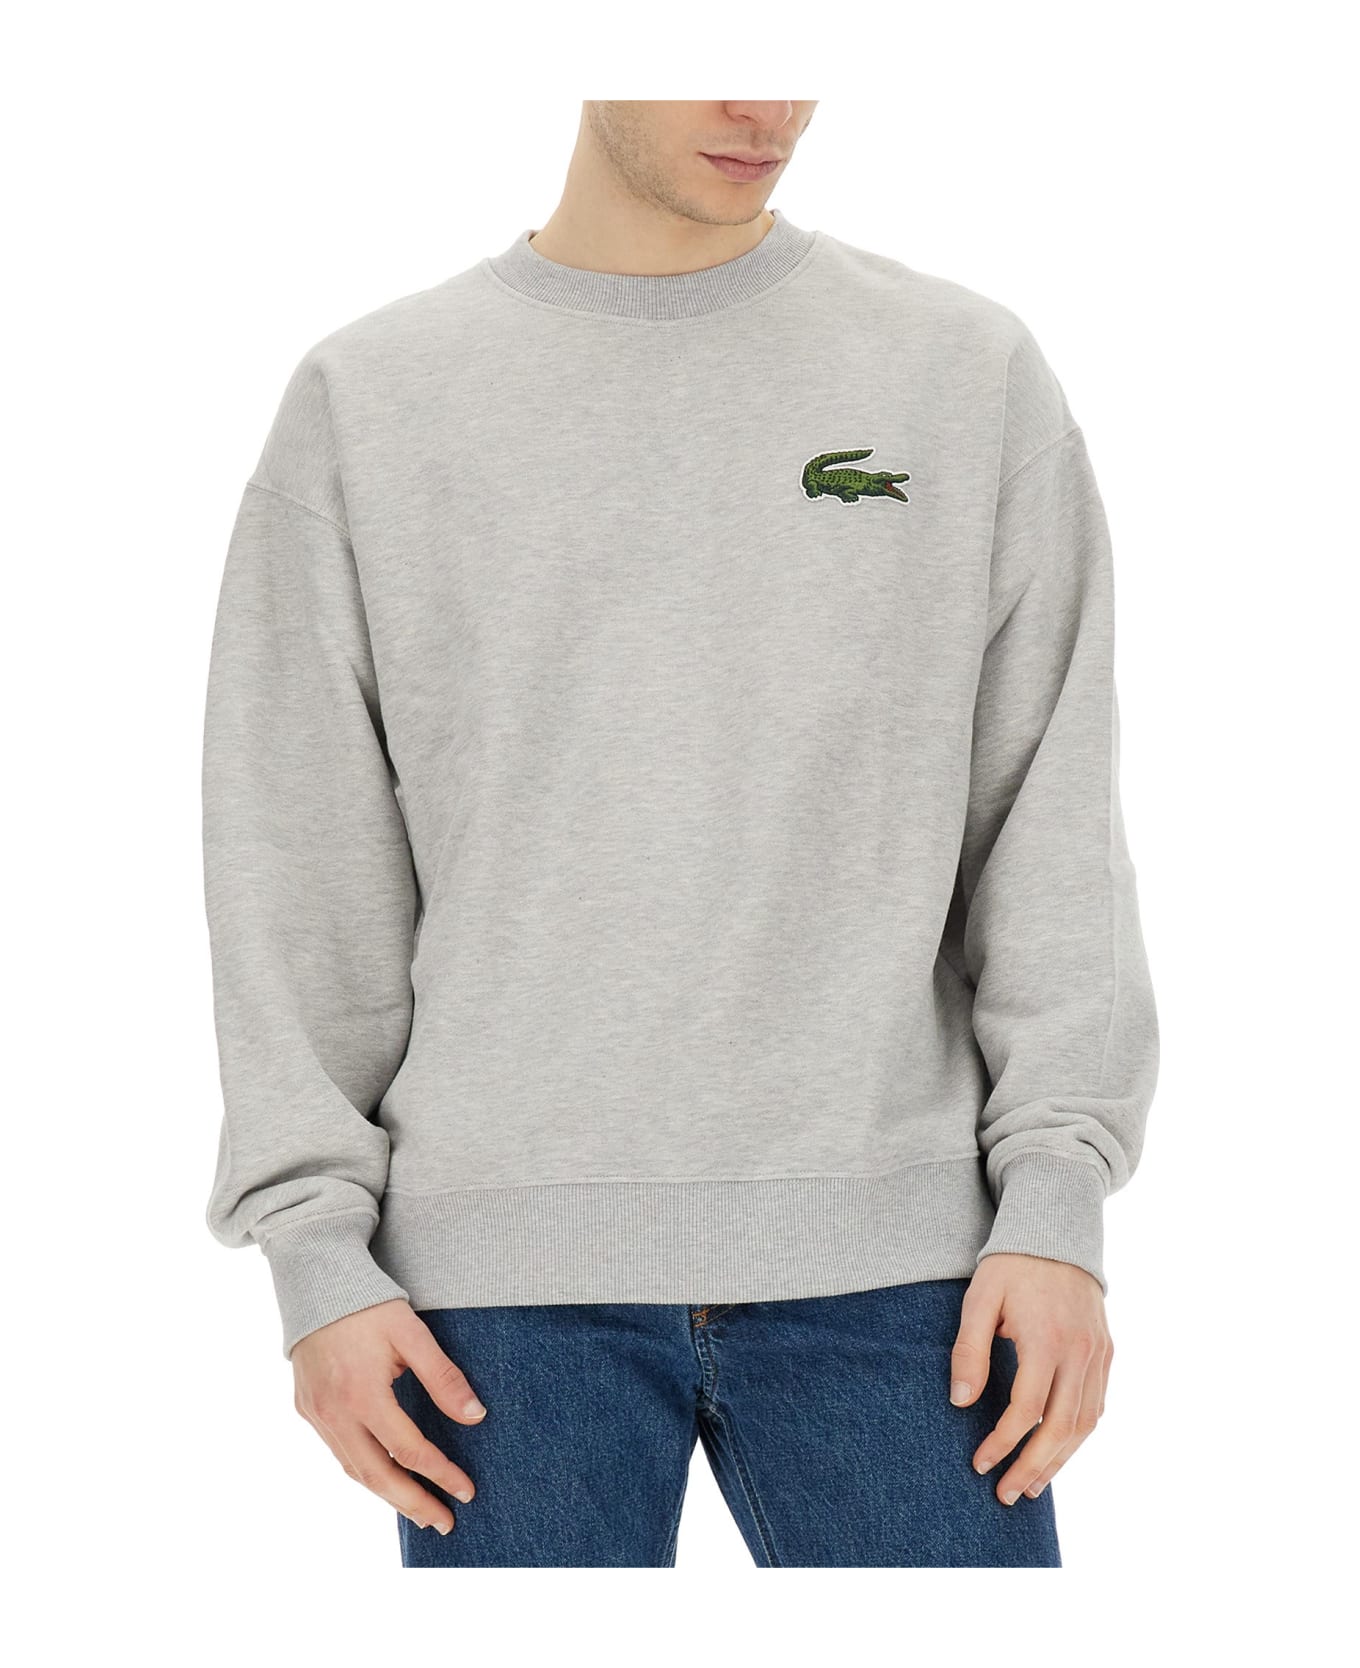 Lacoste Sweatshirt With Logo - Grey